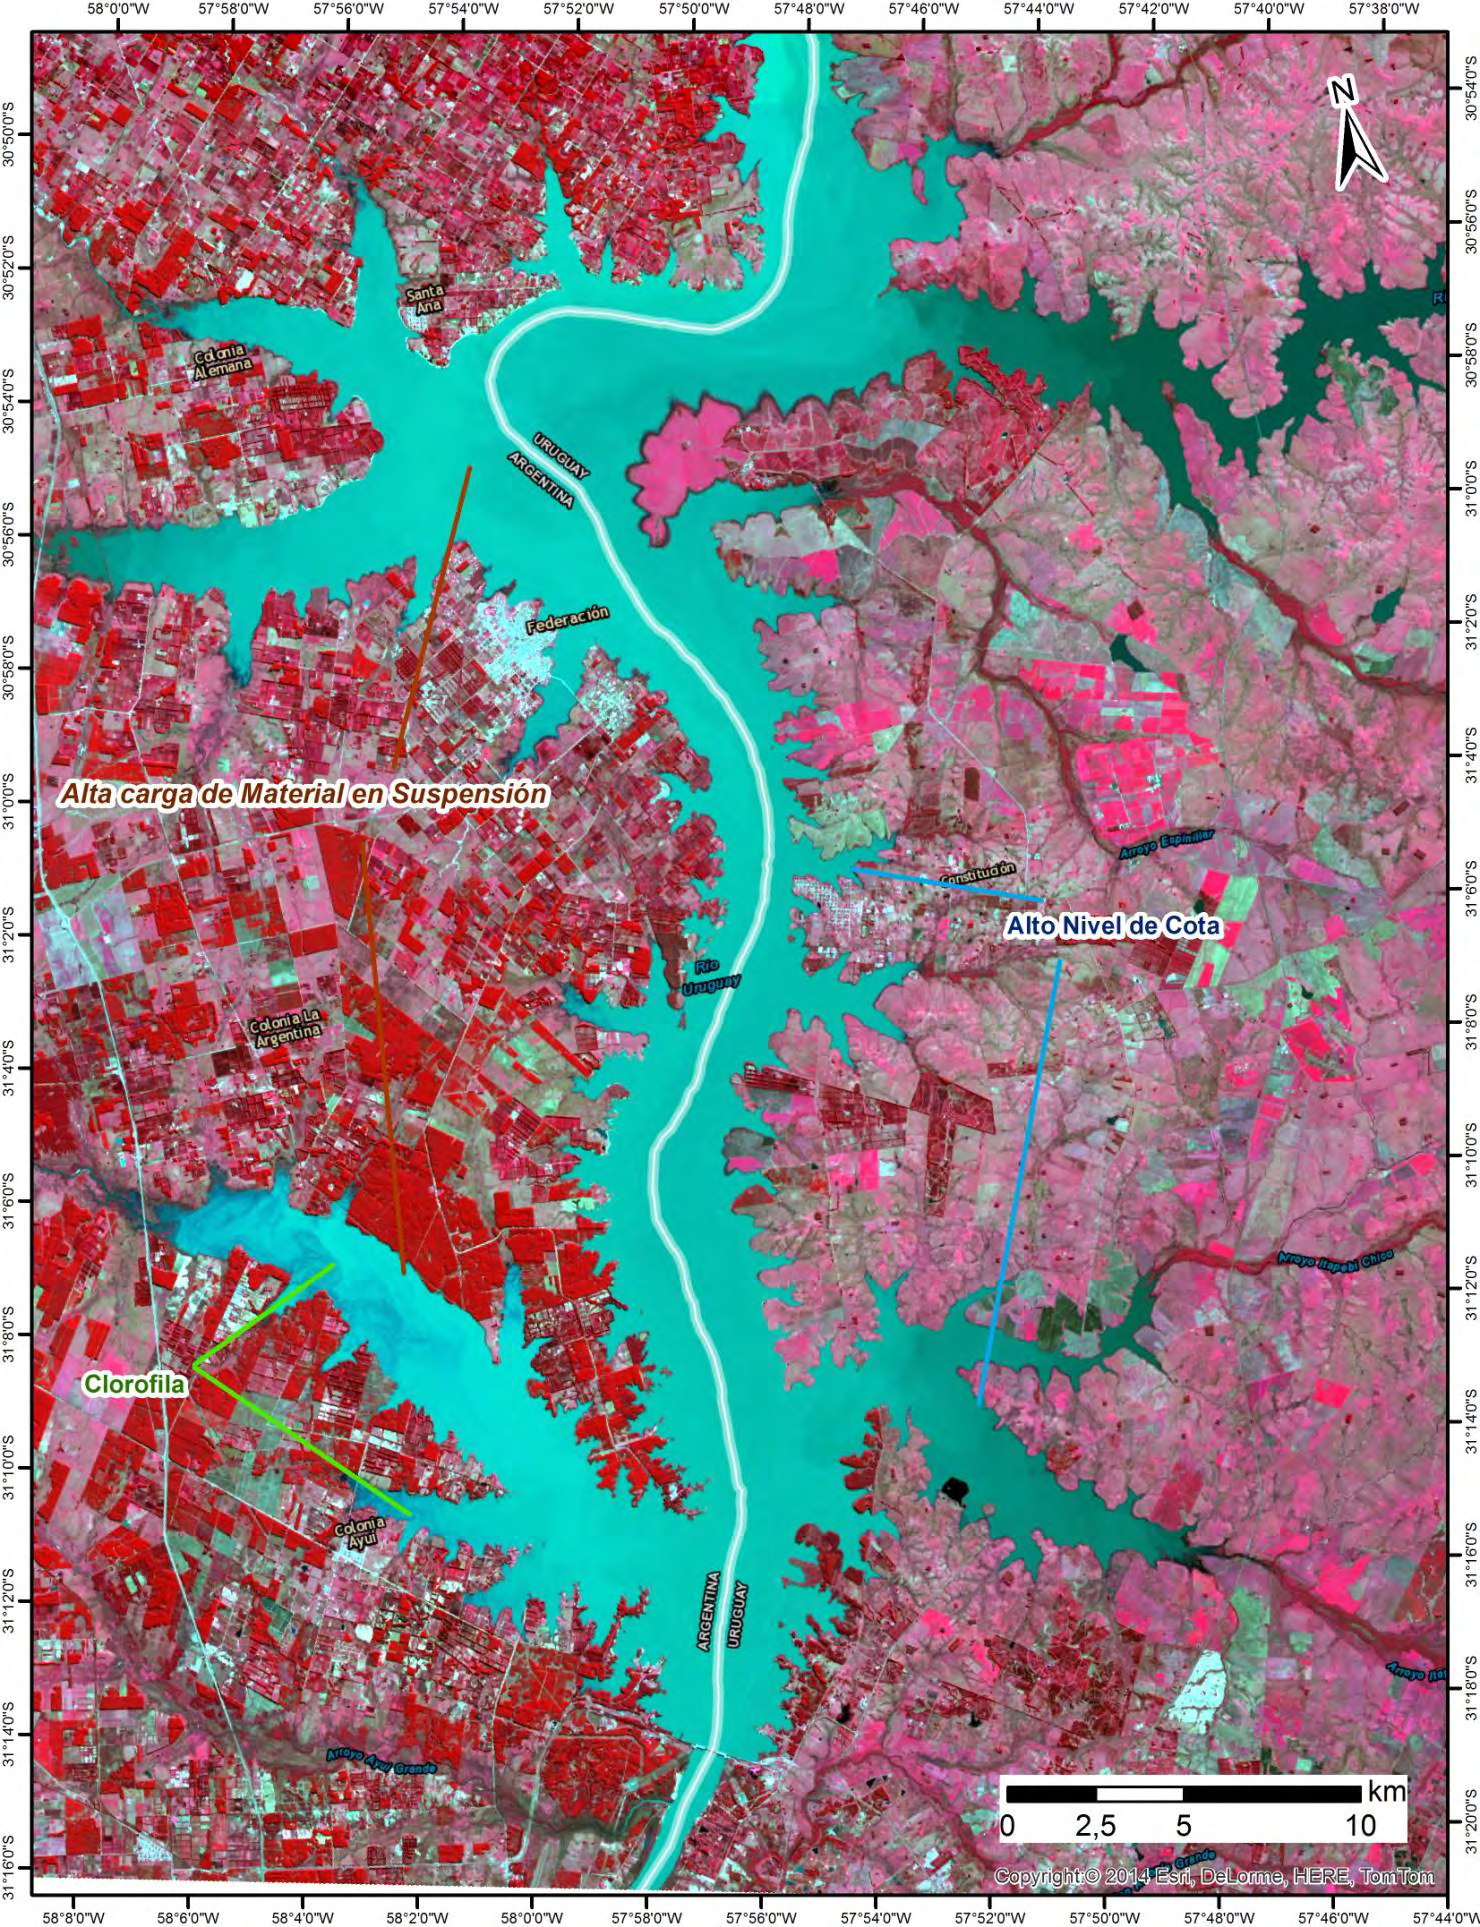 Mosaico Satelital de la Zona 2, elaborado a partir de imágenes Landsat 8 OLI del día 13/08/2014.